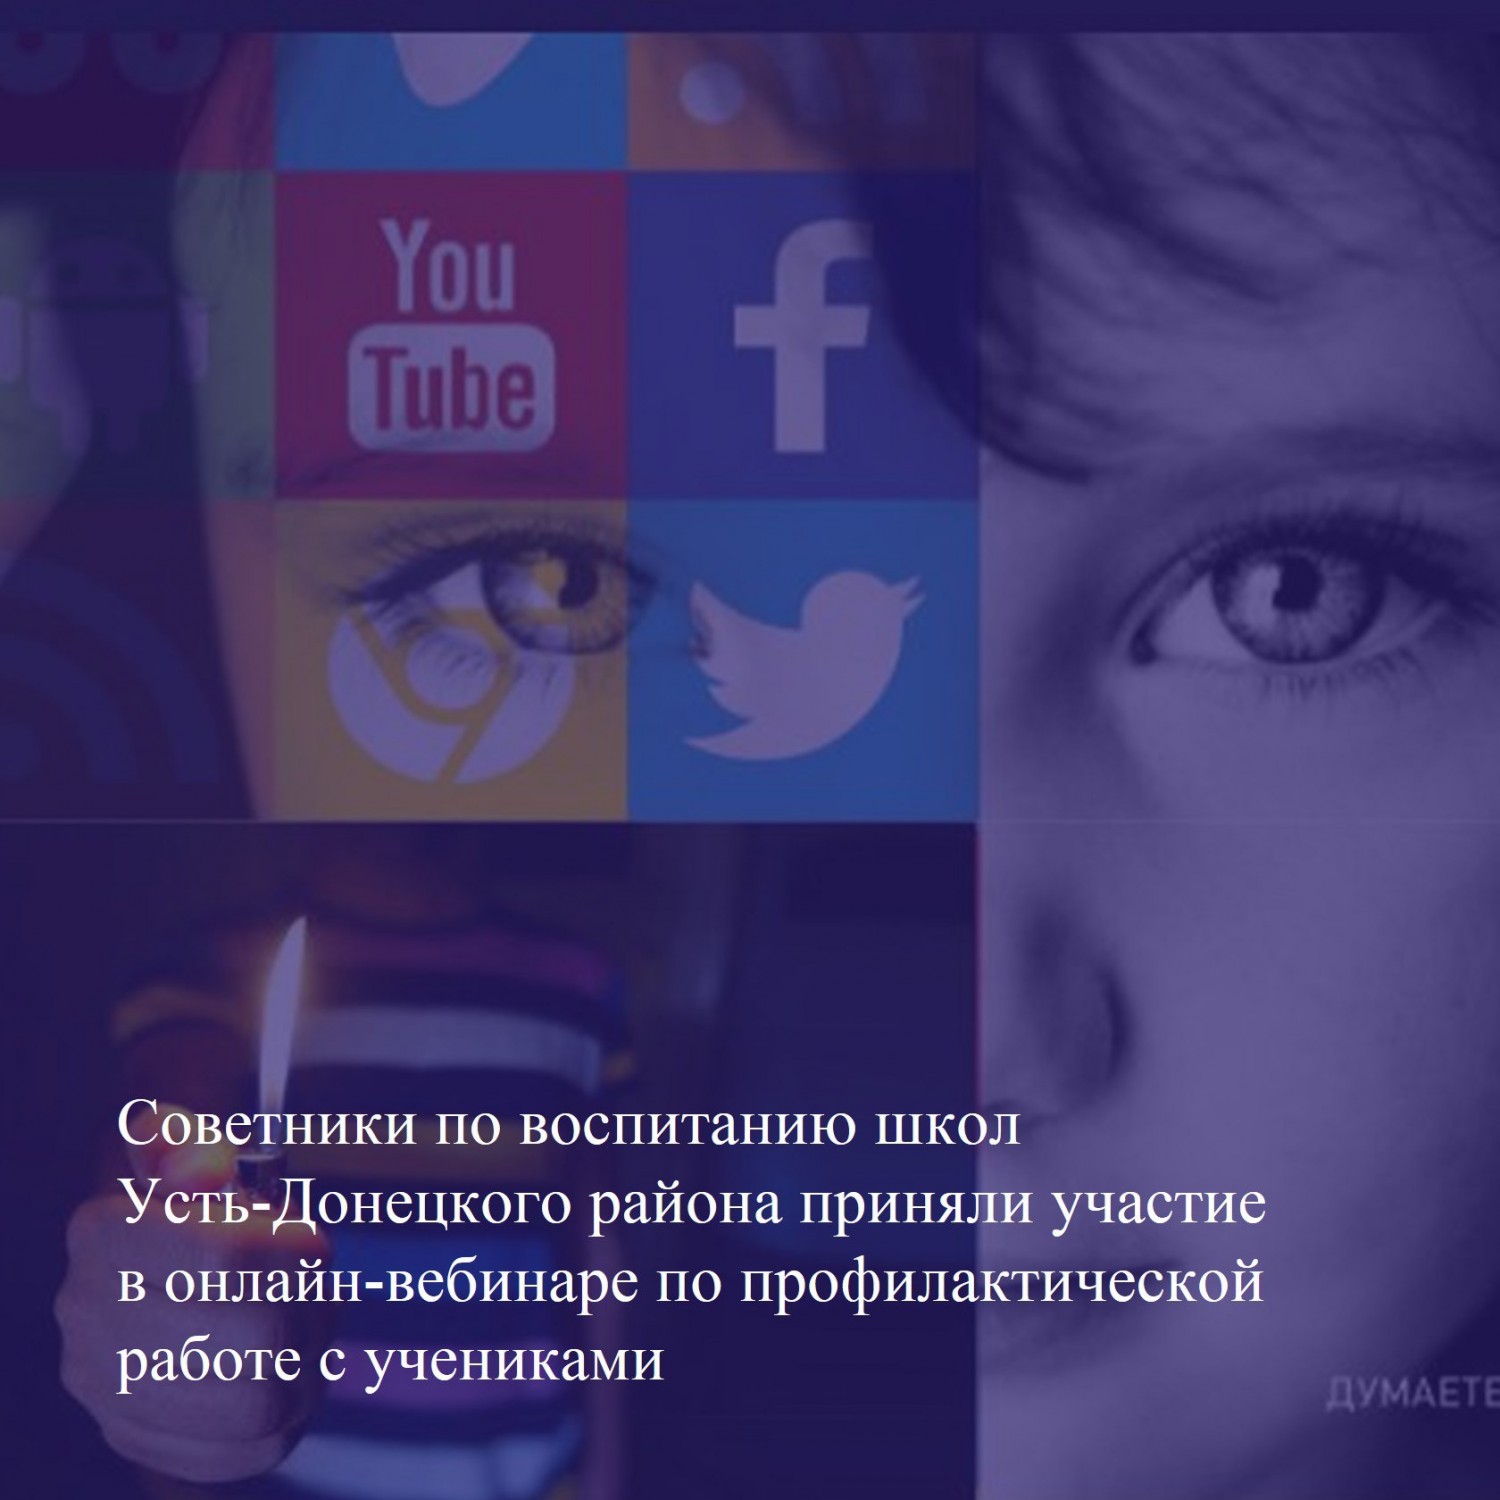 Советники по воспитанию школ Усть-Донецкого района приняли участие в онлайн-вебинаре по профилактической работе с учениками